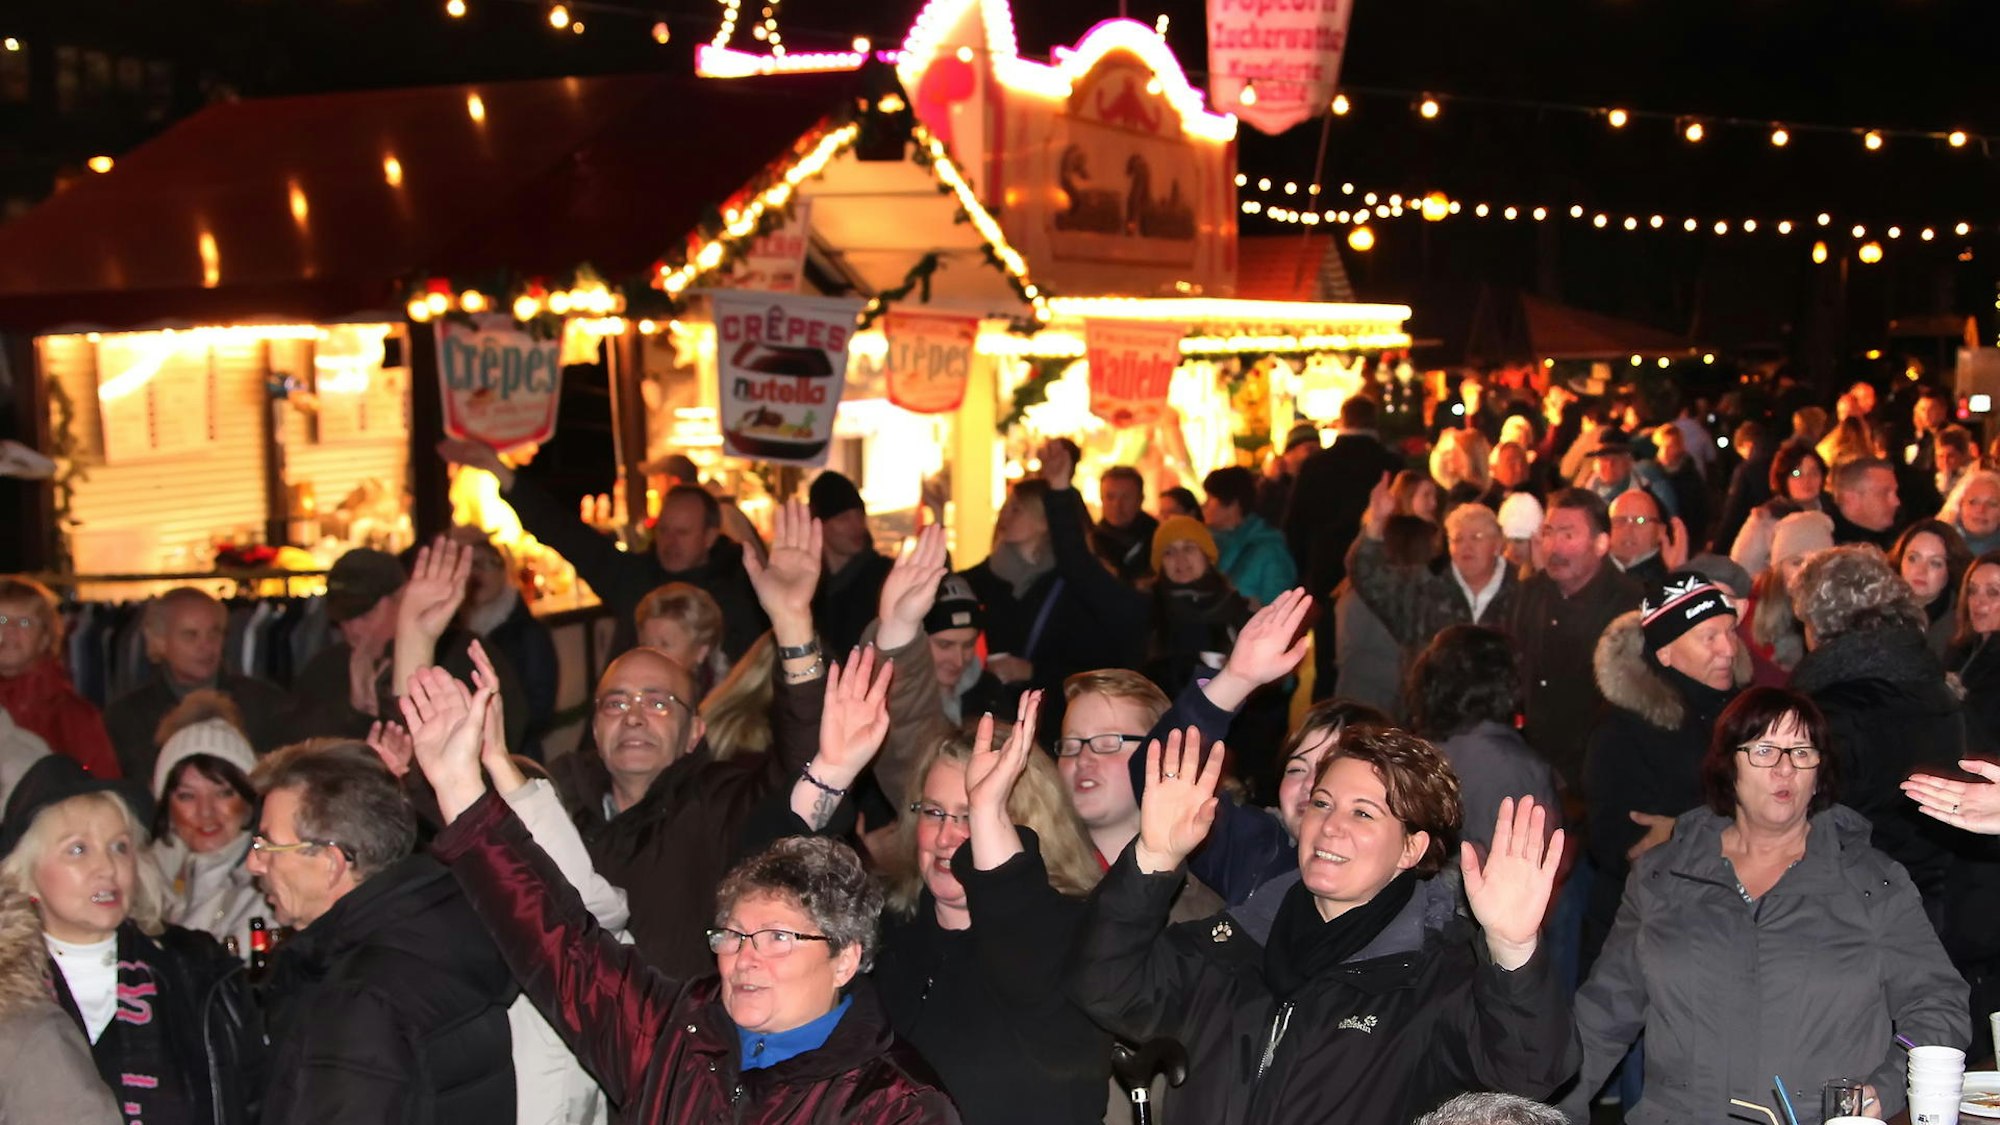 Viele Menschen stehen vor einer Bude auf dem Weihnachtsmarkt und strecken die Hände in die Luft.